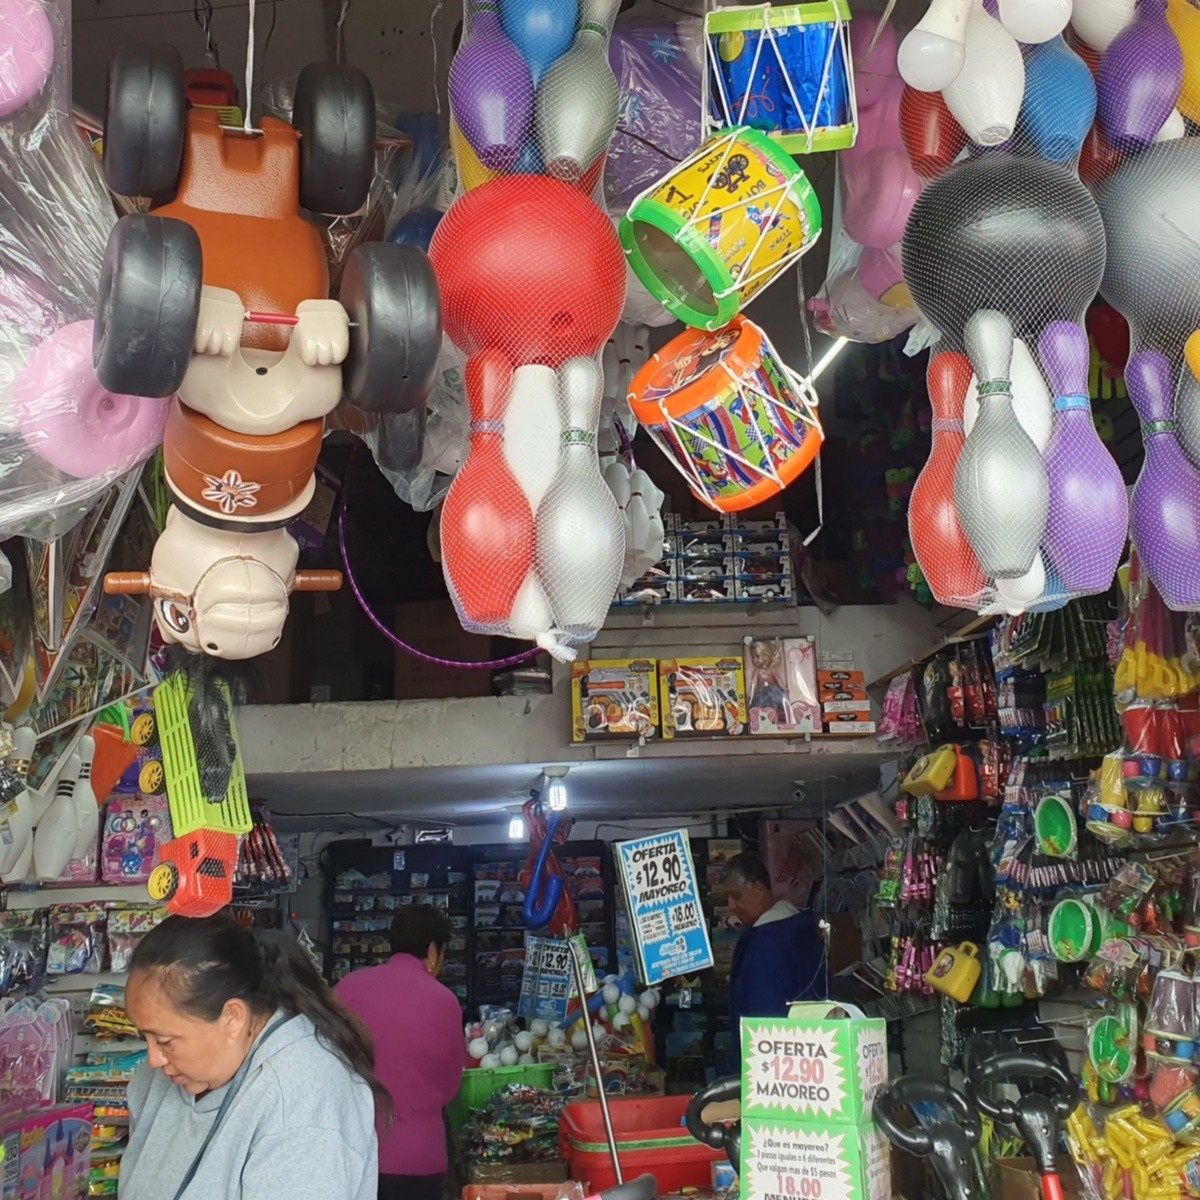 CDMX: Proponen hasta 2 años de cárcel quien venda juguetes bélicos | Informador